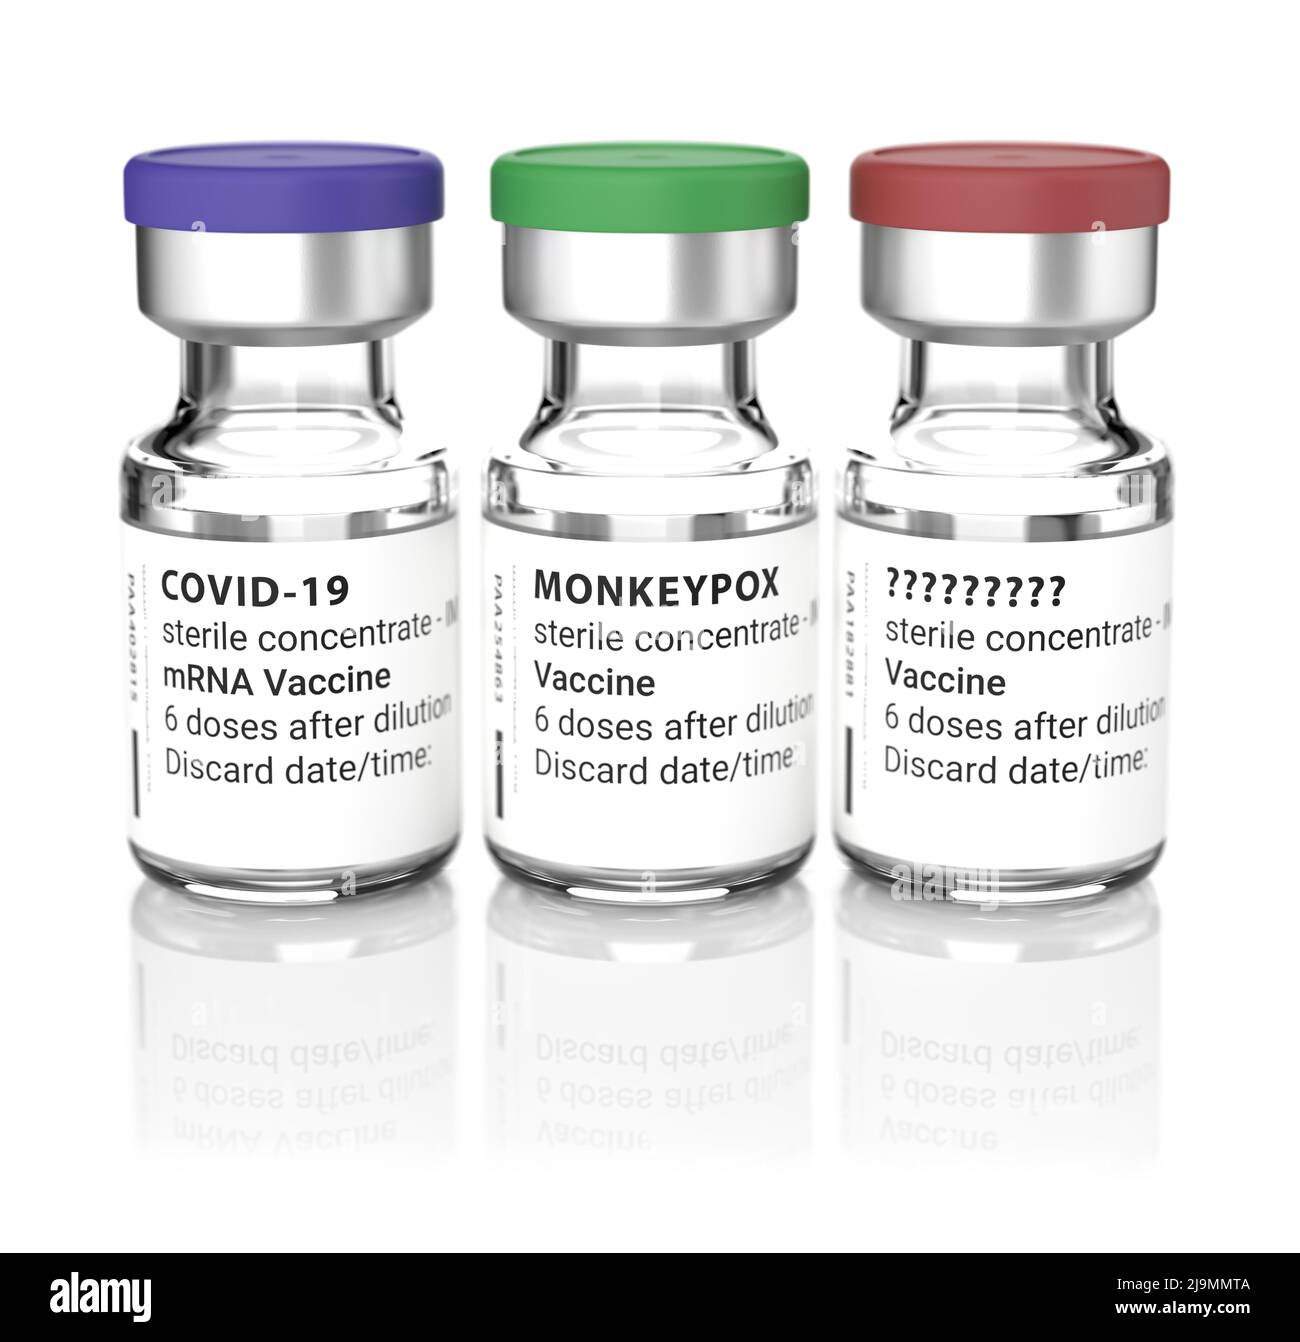 Concept Shot: Was ist die nächste Krankheit nach Covid-19 und Monkeypox? Drei Fläschchen mit Impfung gegen „Covid-19“, „Monkeypox“ und „???“ Stockfoto